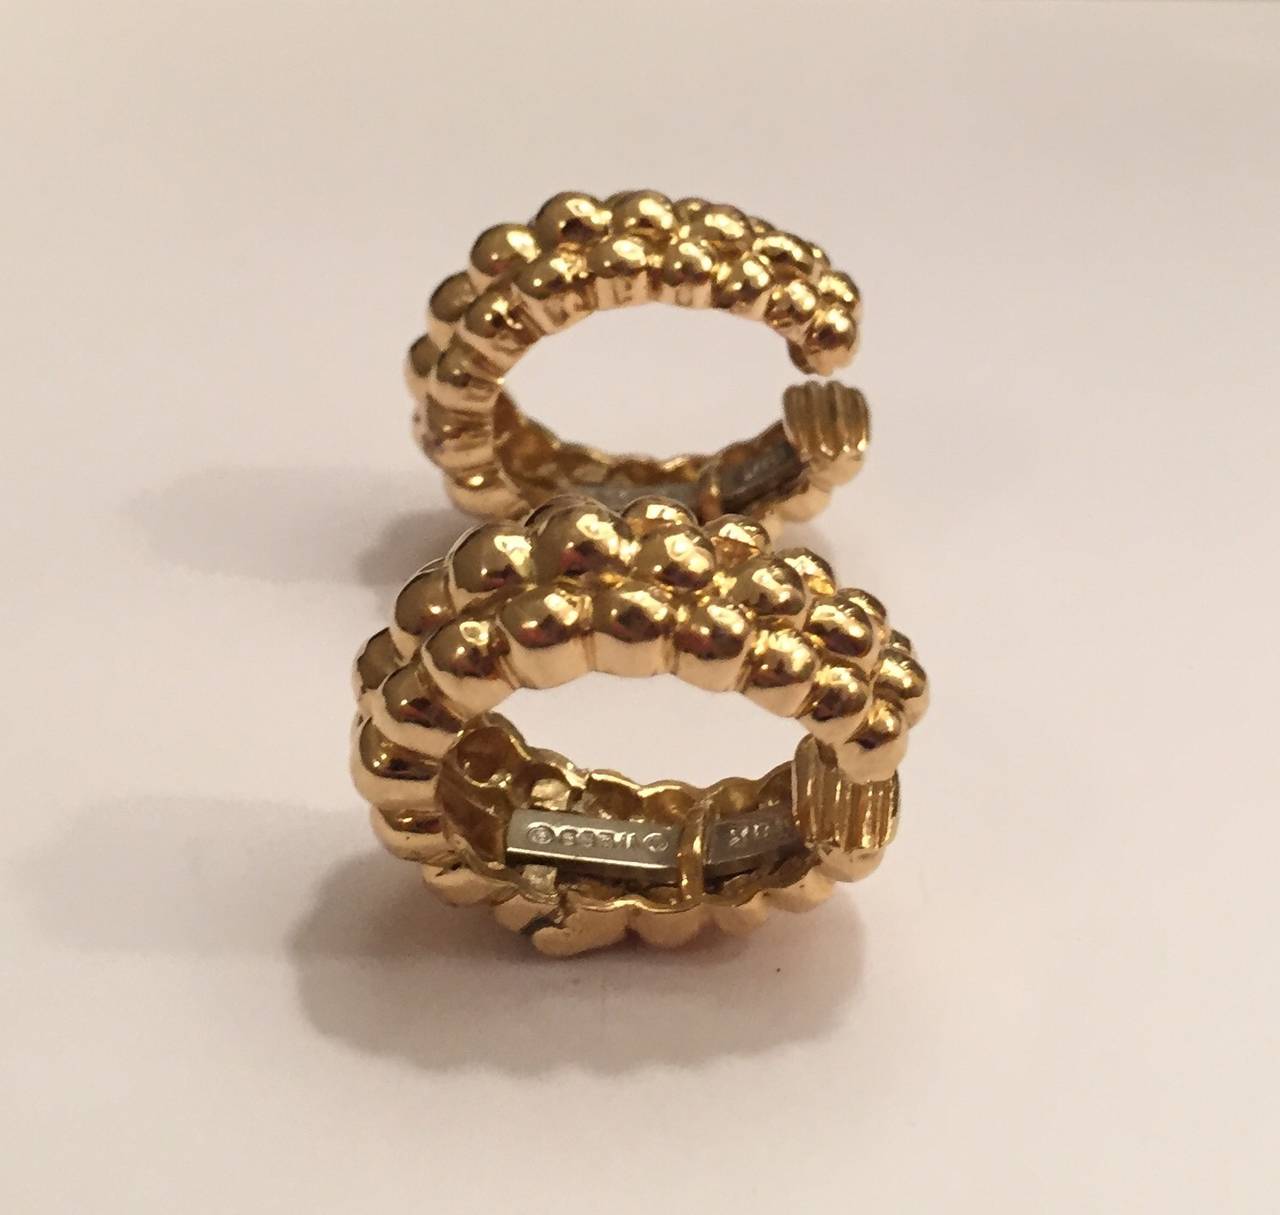 dreireihige Creole-Ohrclips aus 18kt Gold von David Webb mit graduierter Signatur  perlen, die für Textur und Bewegung sorgen.  Die Sickenbreite reicht von 1/8